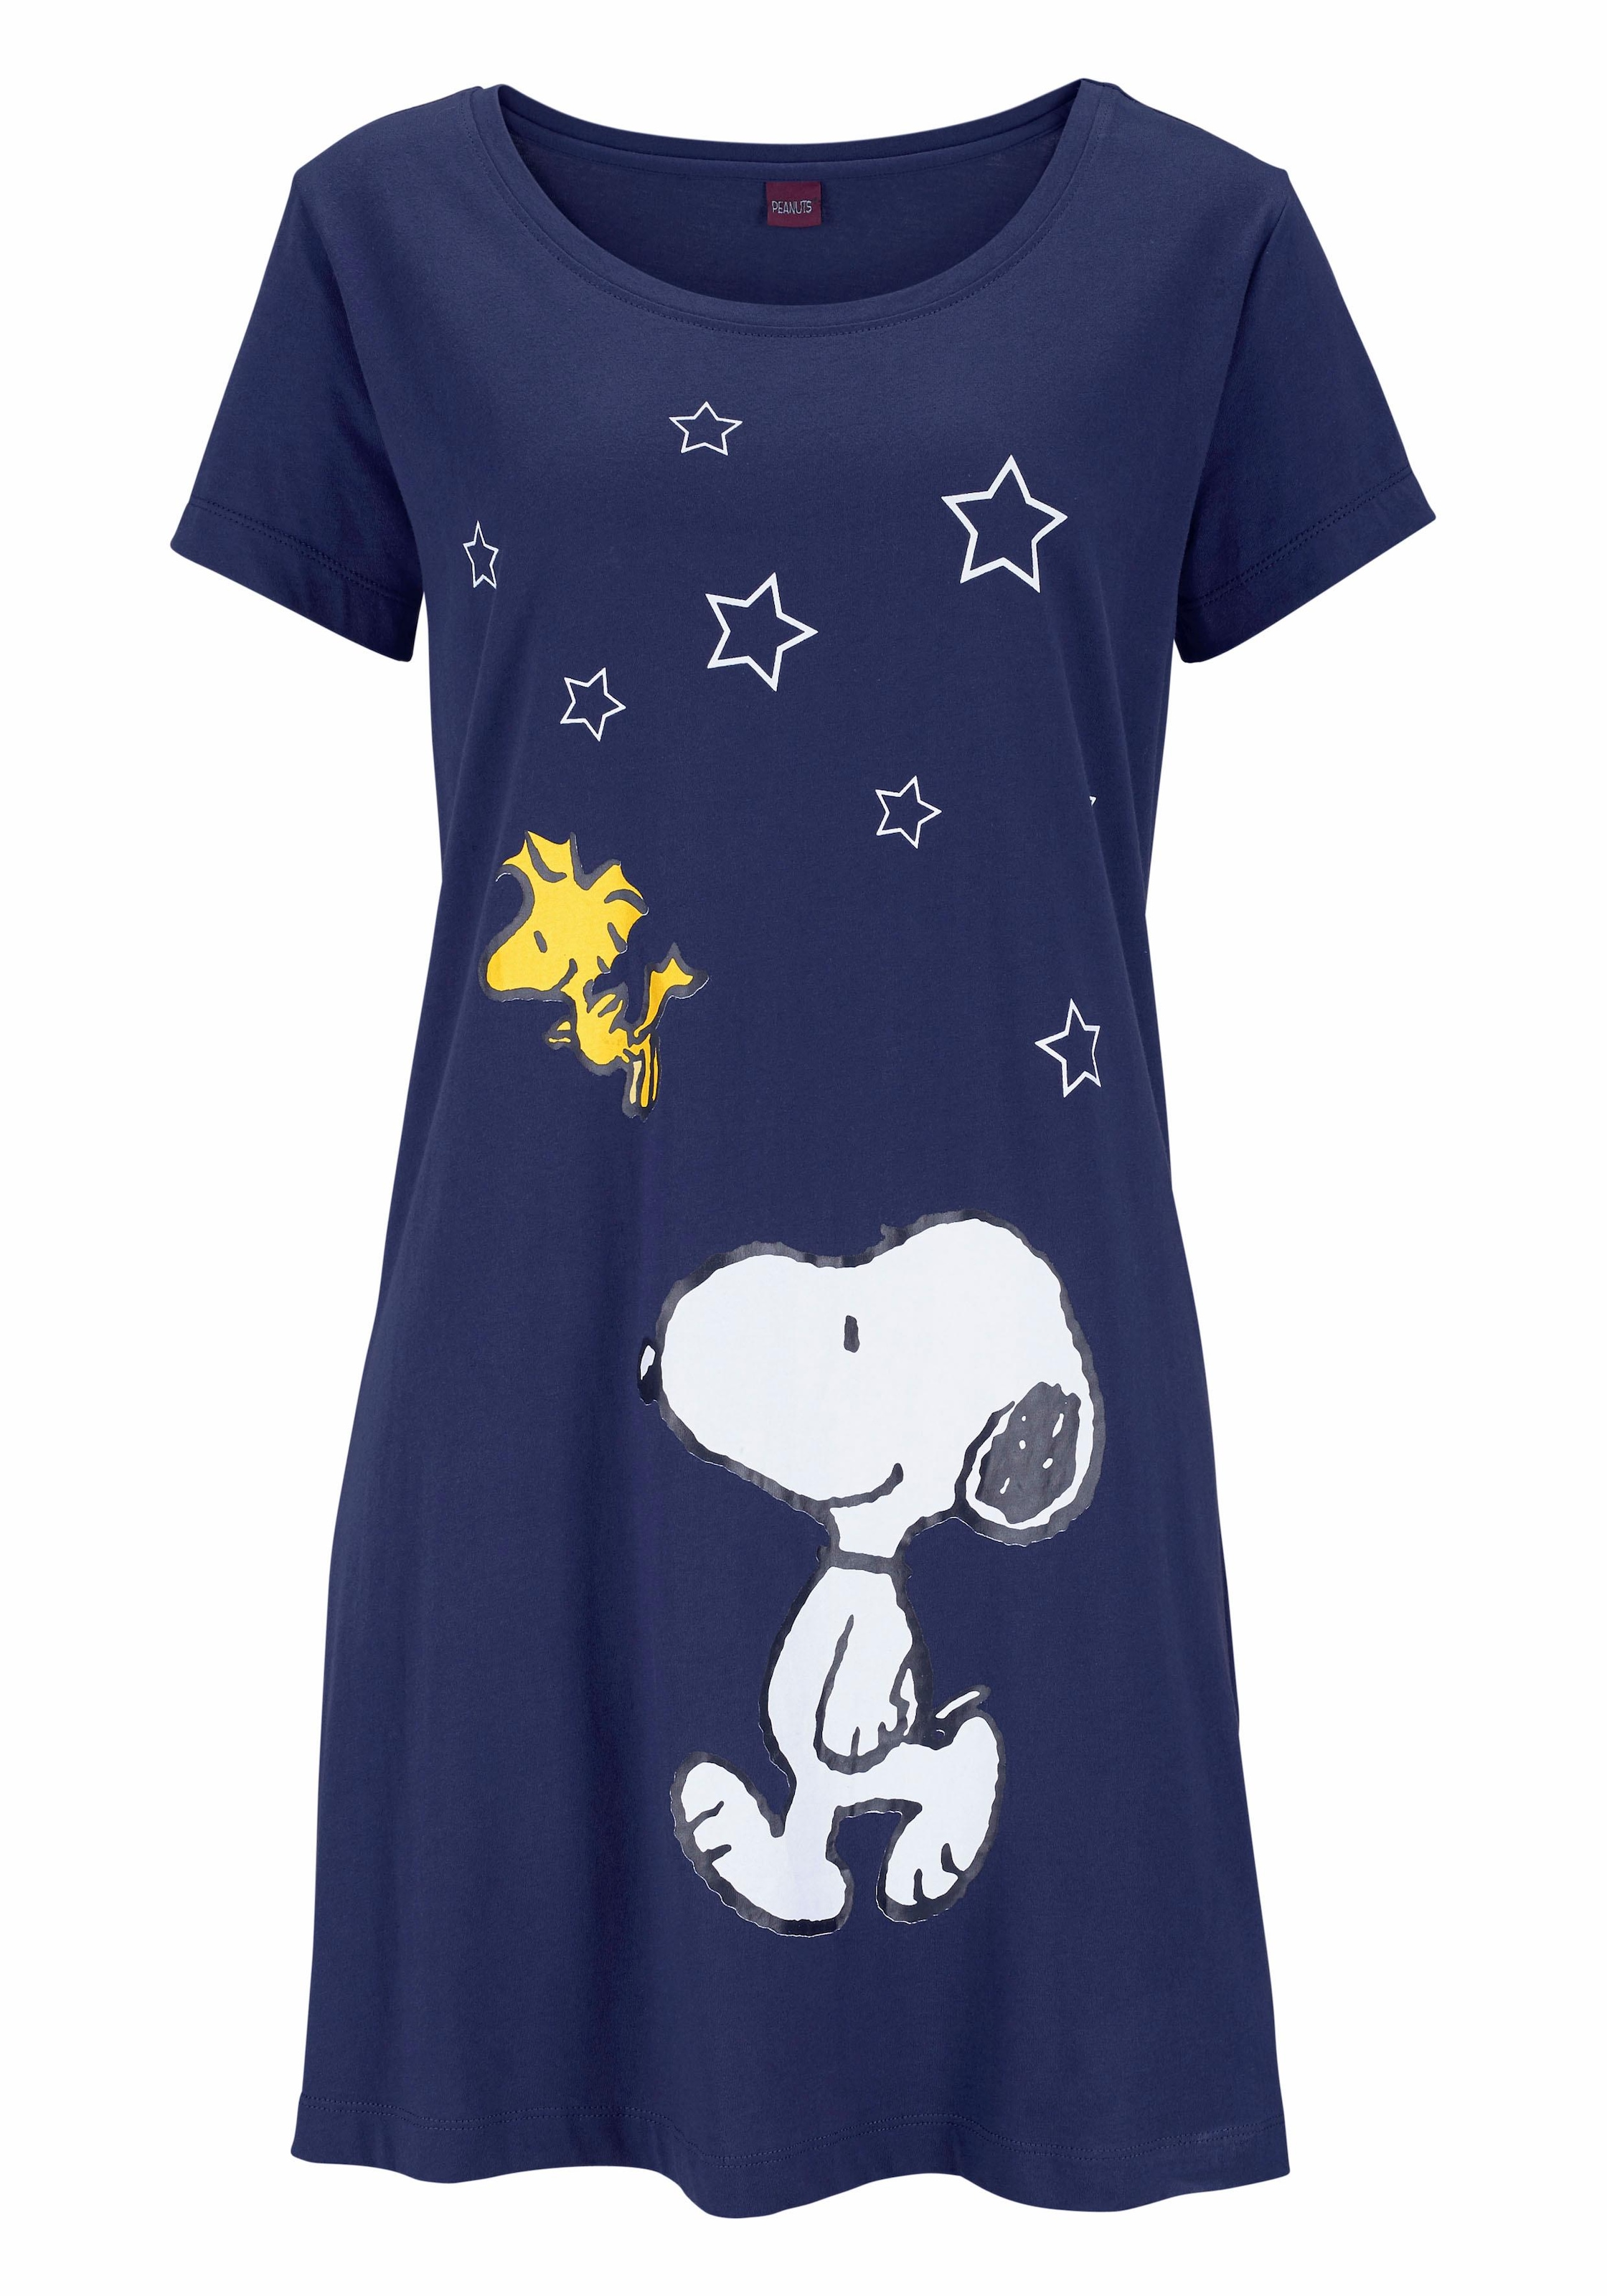 & in Sleepshirt, Peanuts bestellen Snoopy-Print Wäsche mit Minilänge auf Rechnung